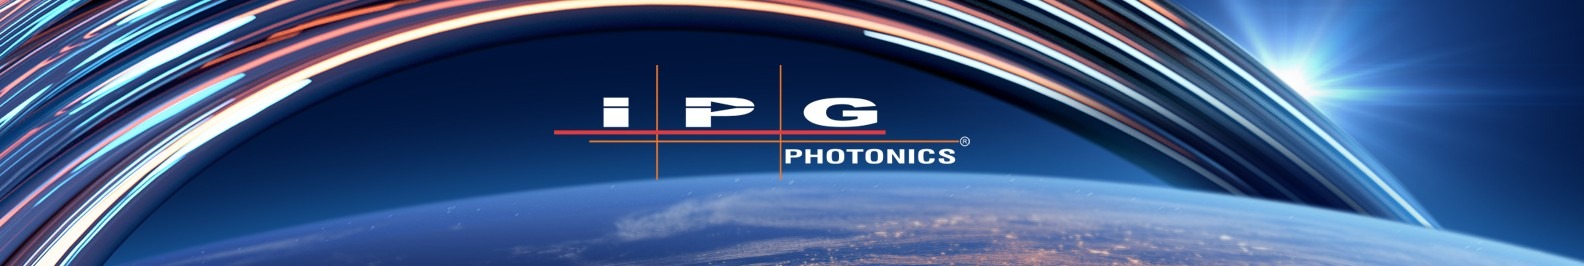 IPG Photonics background